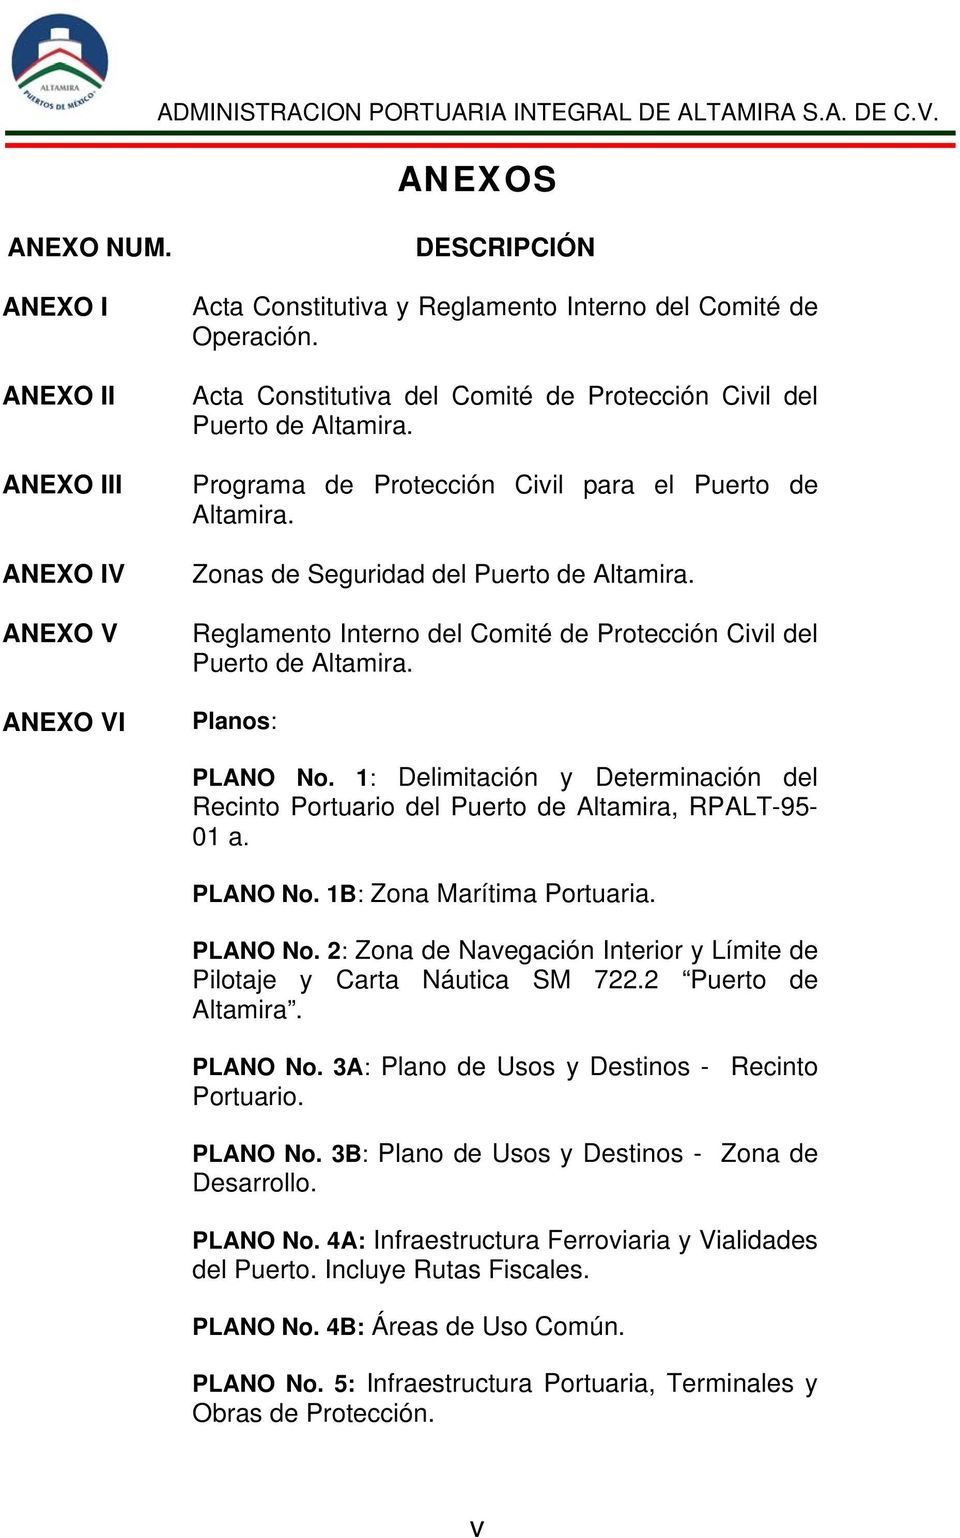 Reglamento Interno del Comité de Protección Civil del Puerto de Altamira. Planos: PLANO No. 1: Delimitación y Determinación del Recinto Portuario del Puerto de Altamira, RPALT-95-01 a. PLANO No. 1B: Zona Marítima Portuaria.